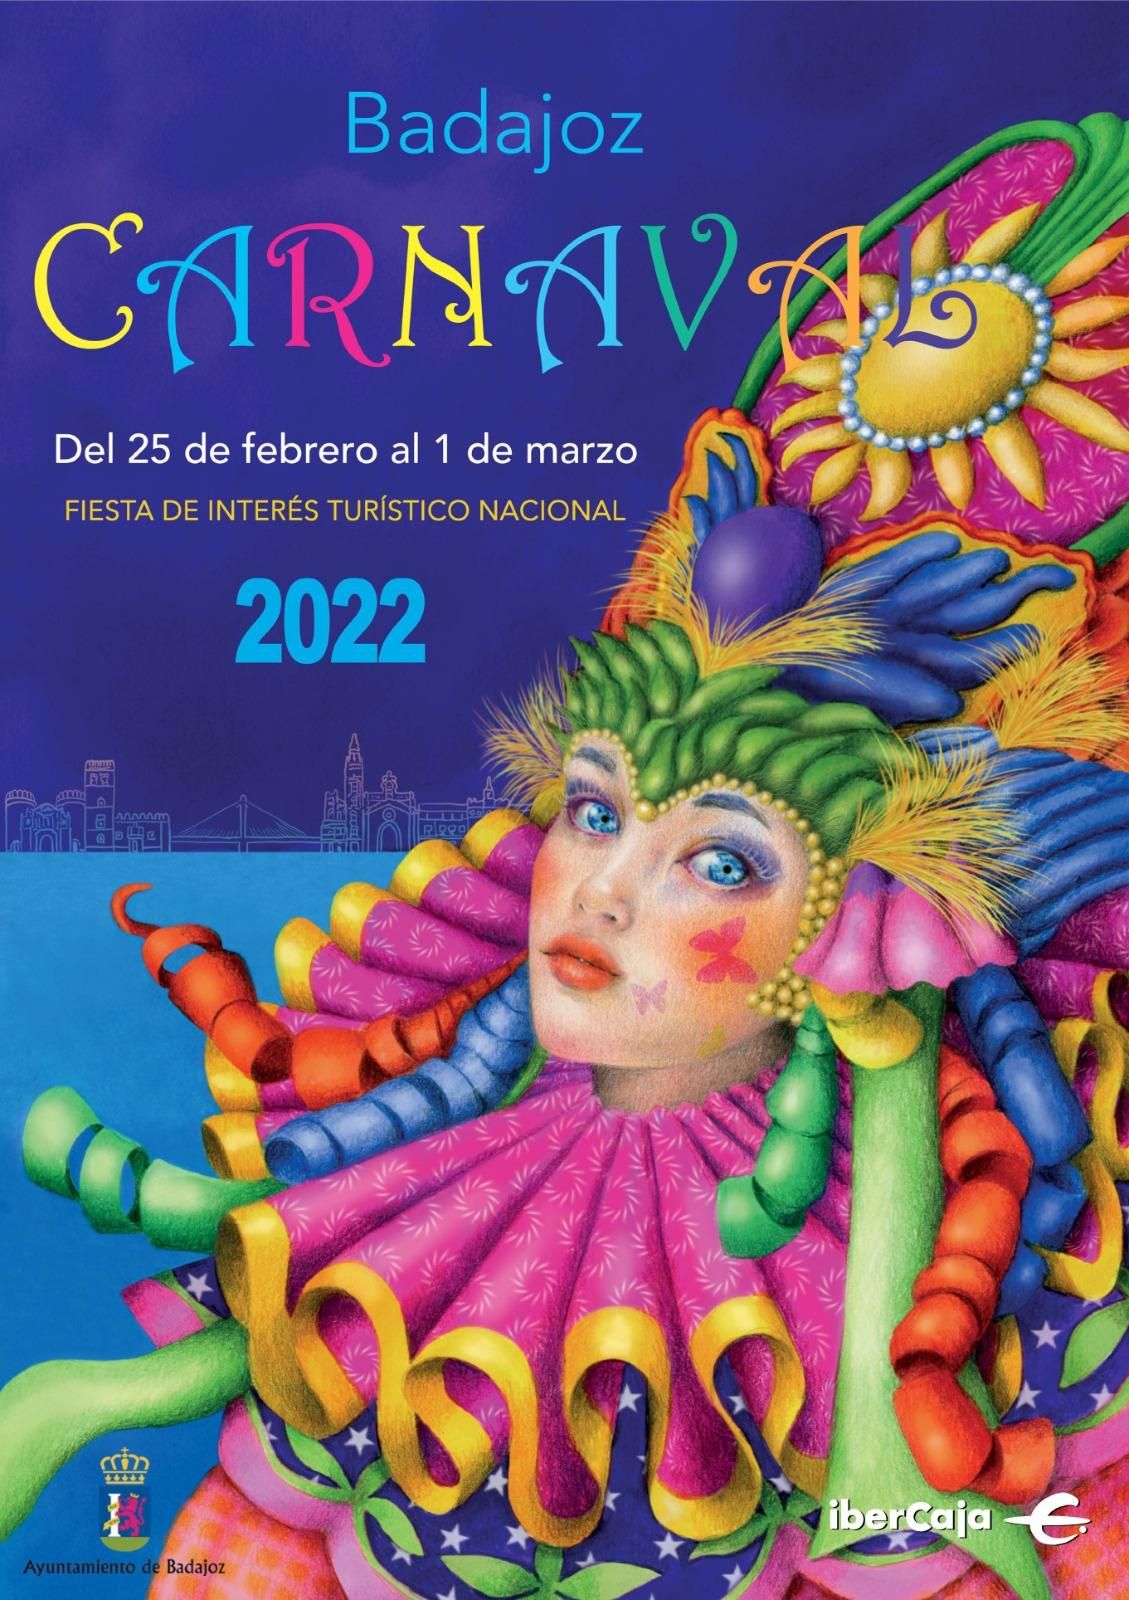 Una ilustradora de Almendralejo firma el cartel del Carnaval de Badajoz  2022 - El Periódico Extremadura